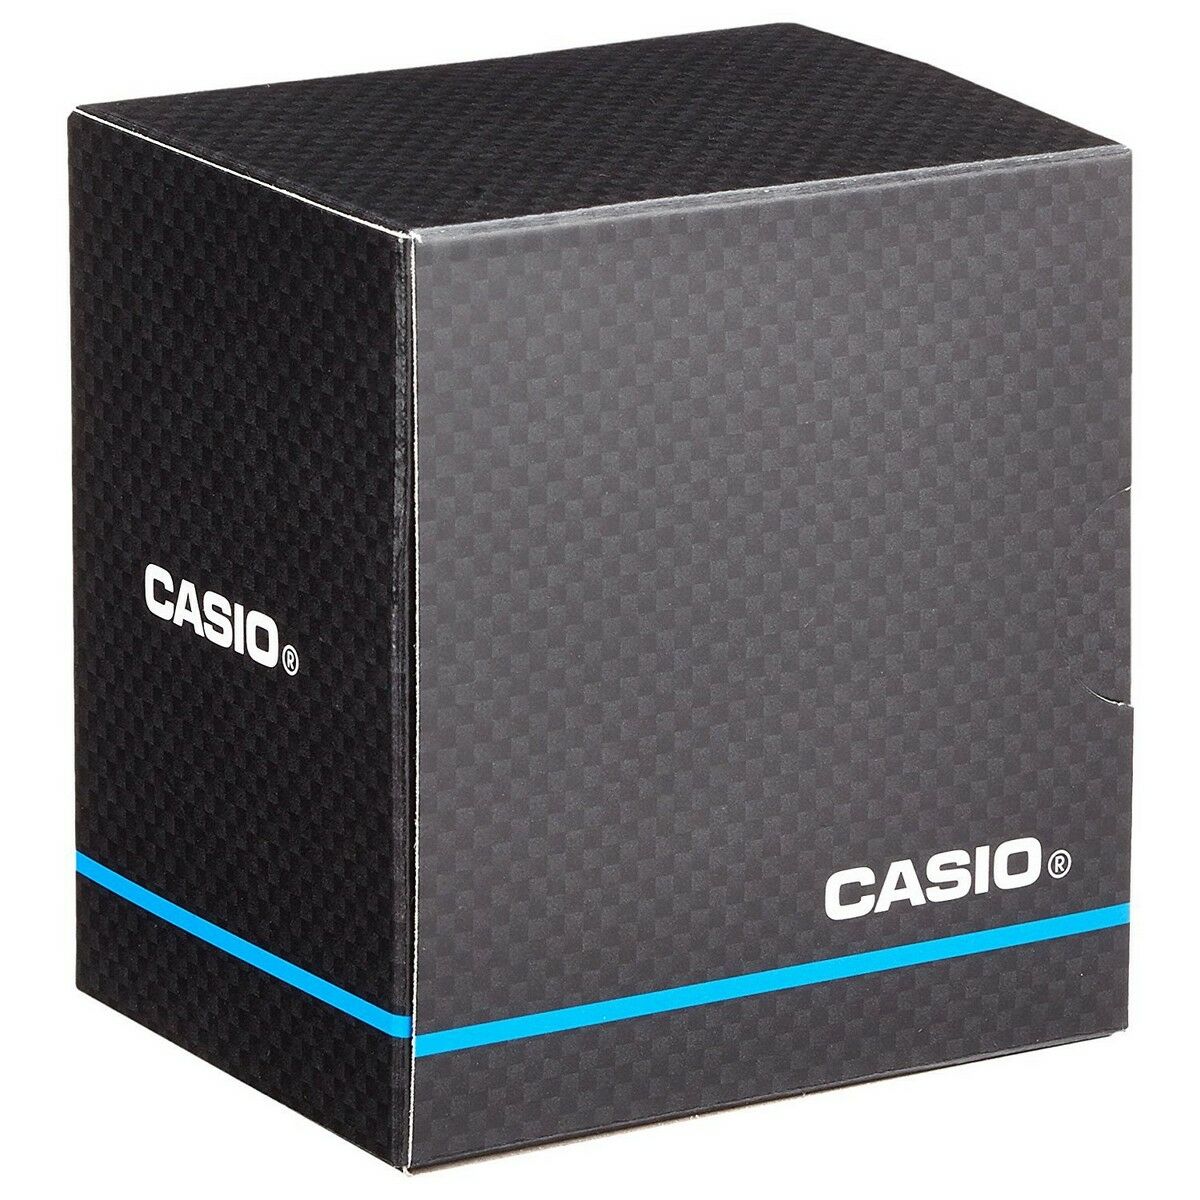 Kaufe Unisex-Uhr Casio COLLECTION (Ø 43 mm) bei AWK Flagship um € 67.00